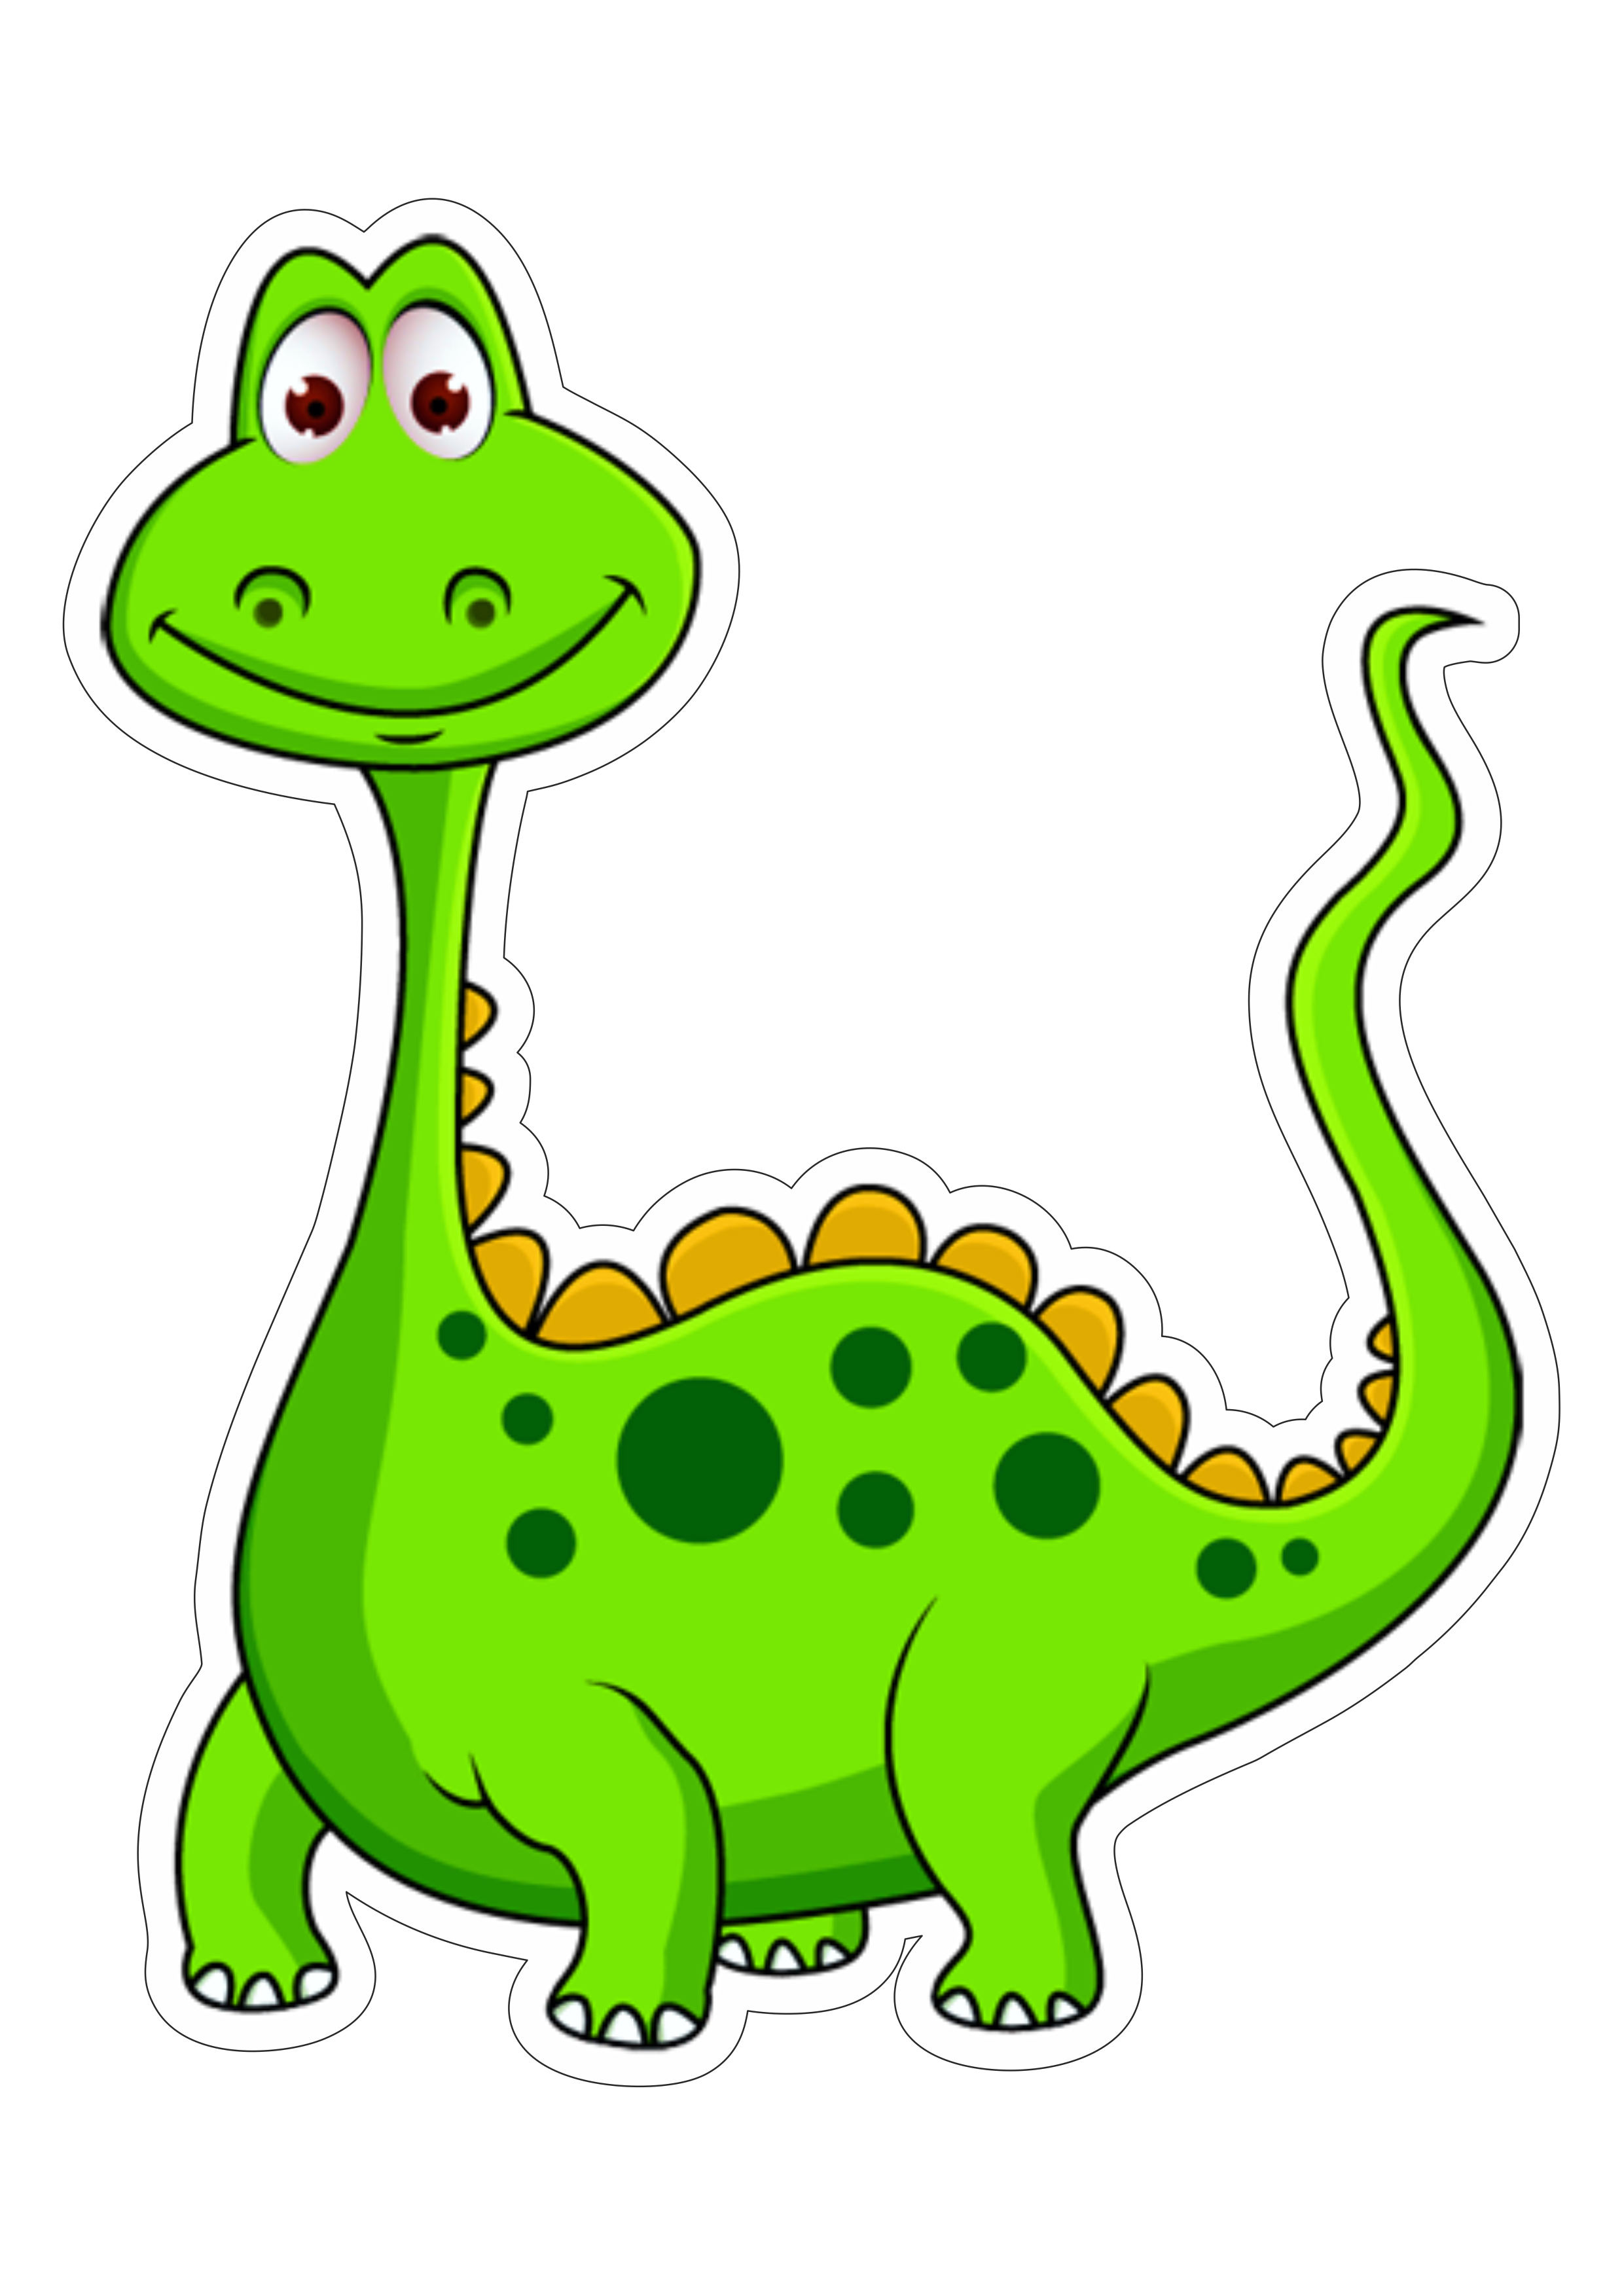 Adesivo Decorativo Dinossauro dos desenhos animados